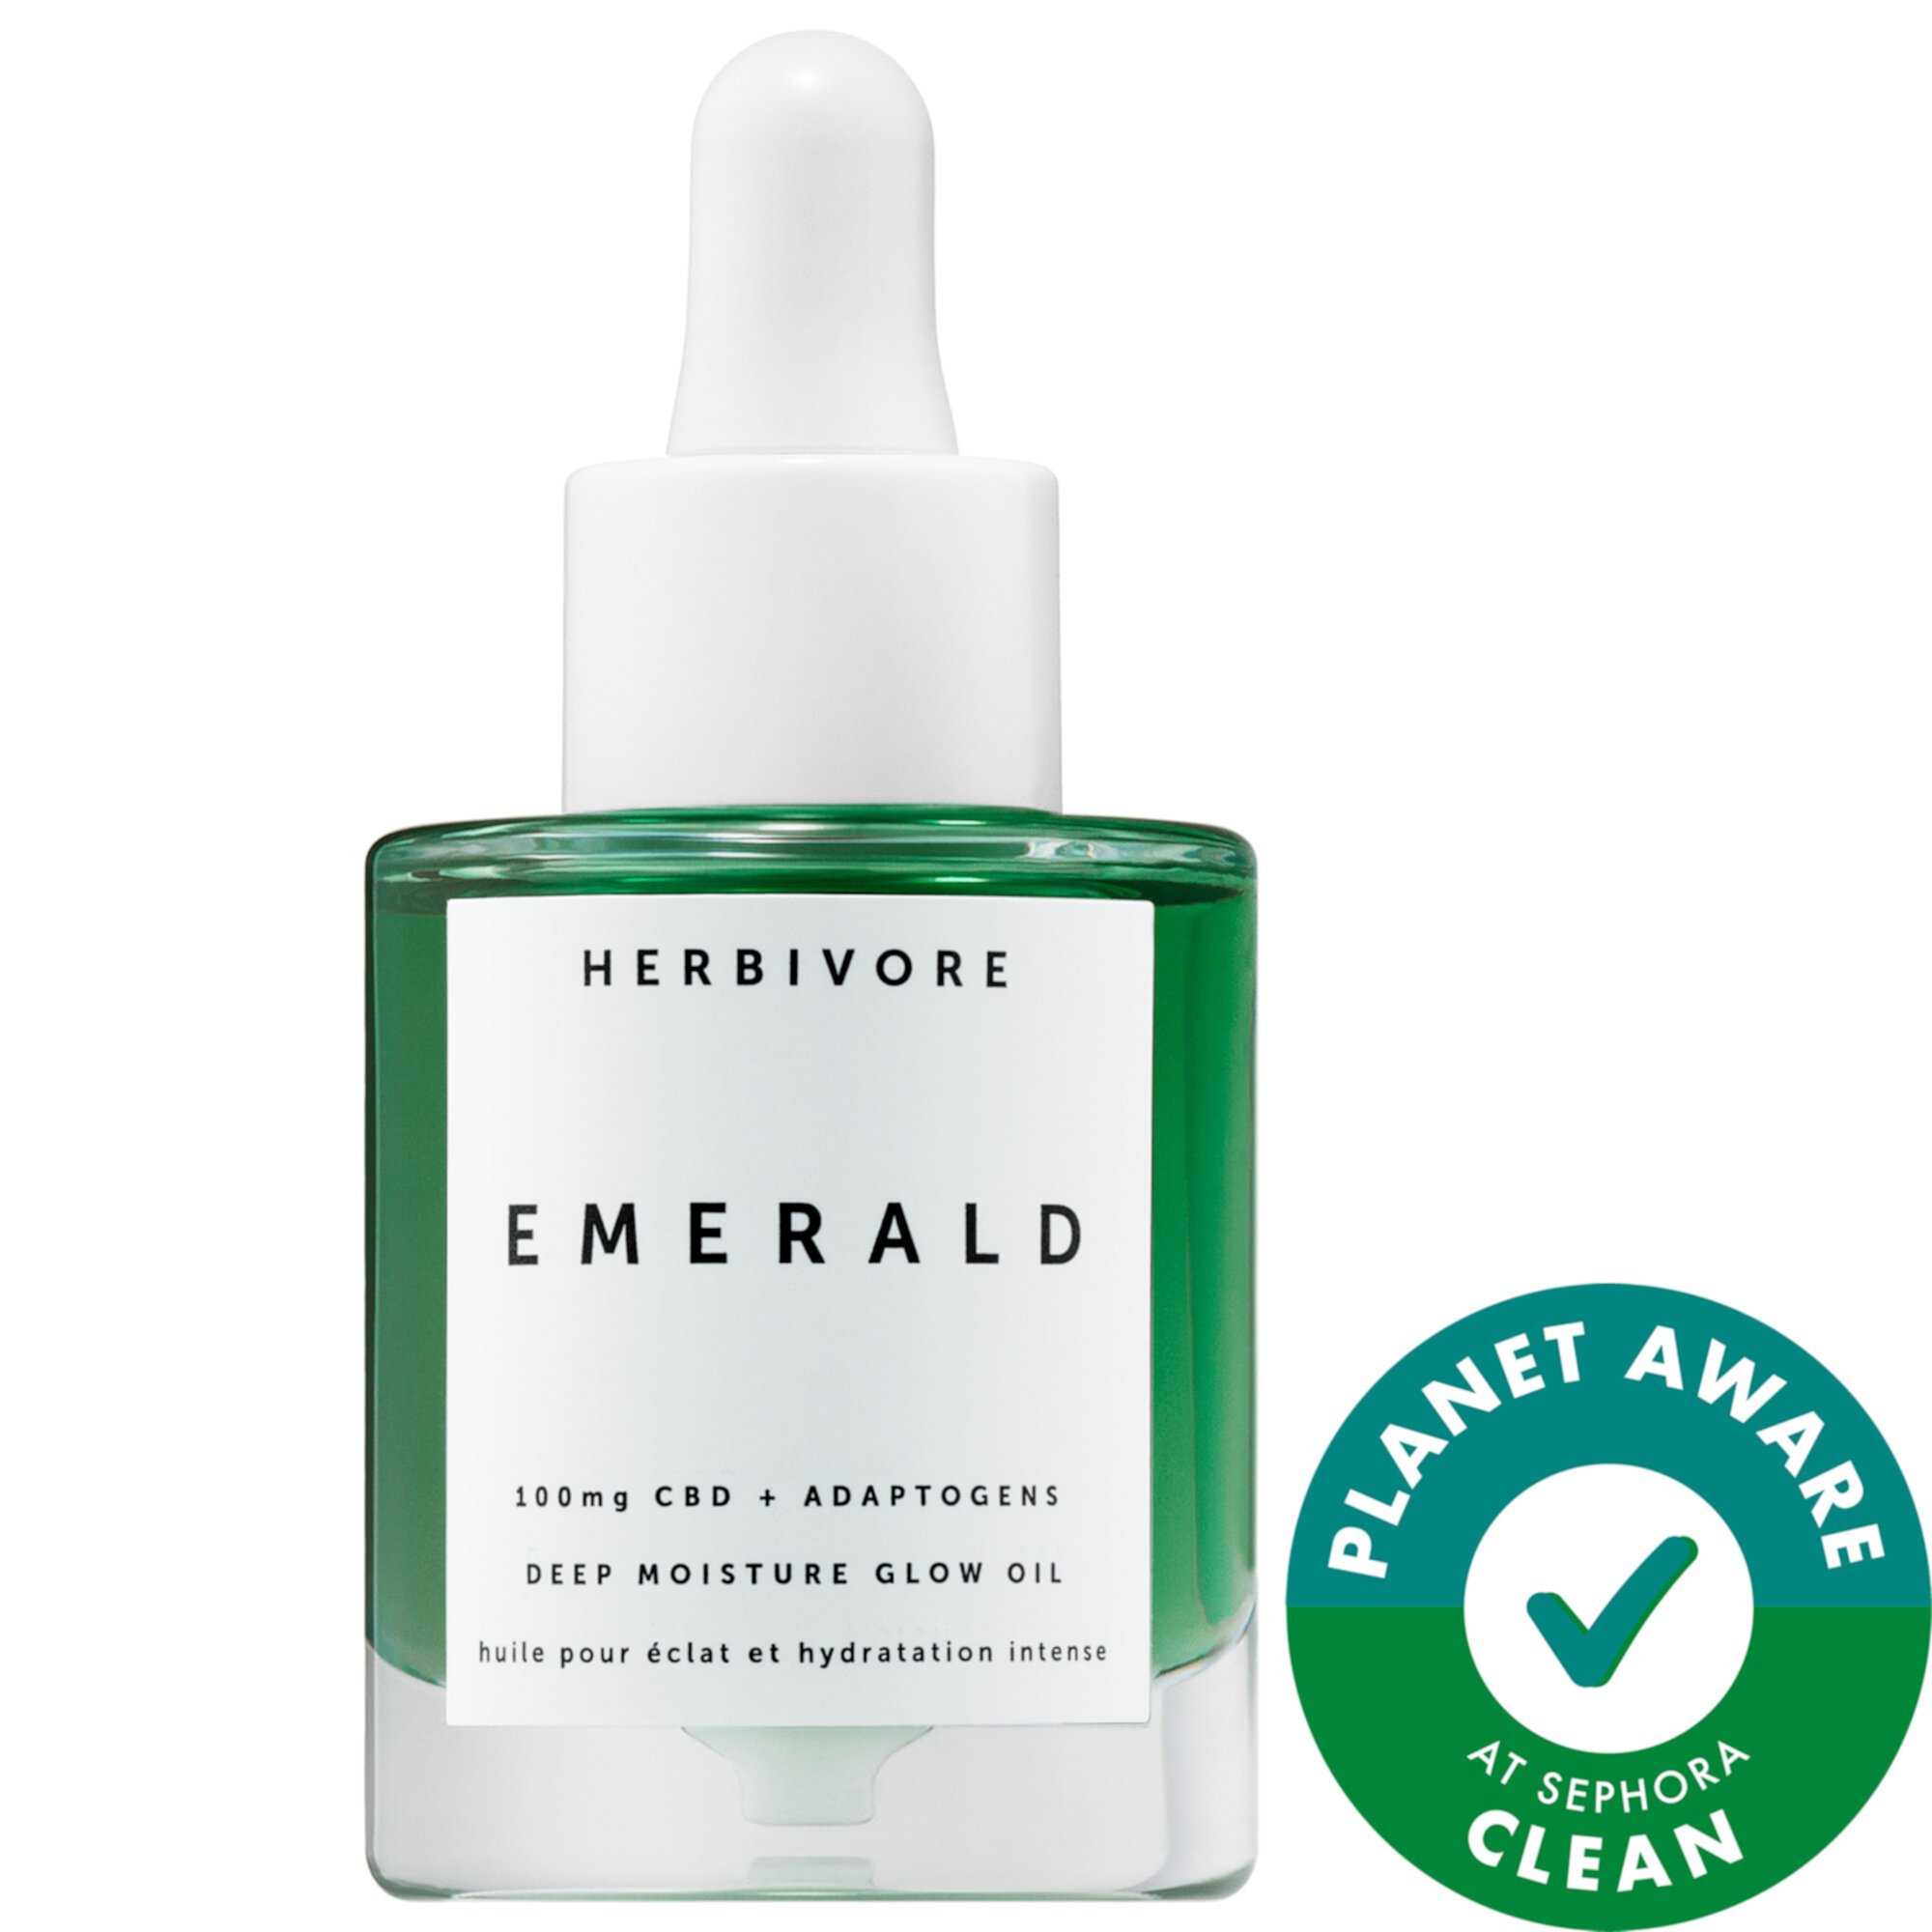 Emerald CBD + Адаптогены Глубоко увлажняющее сияющее масло Herbivore